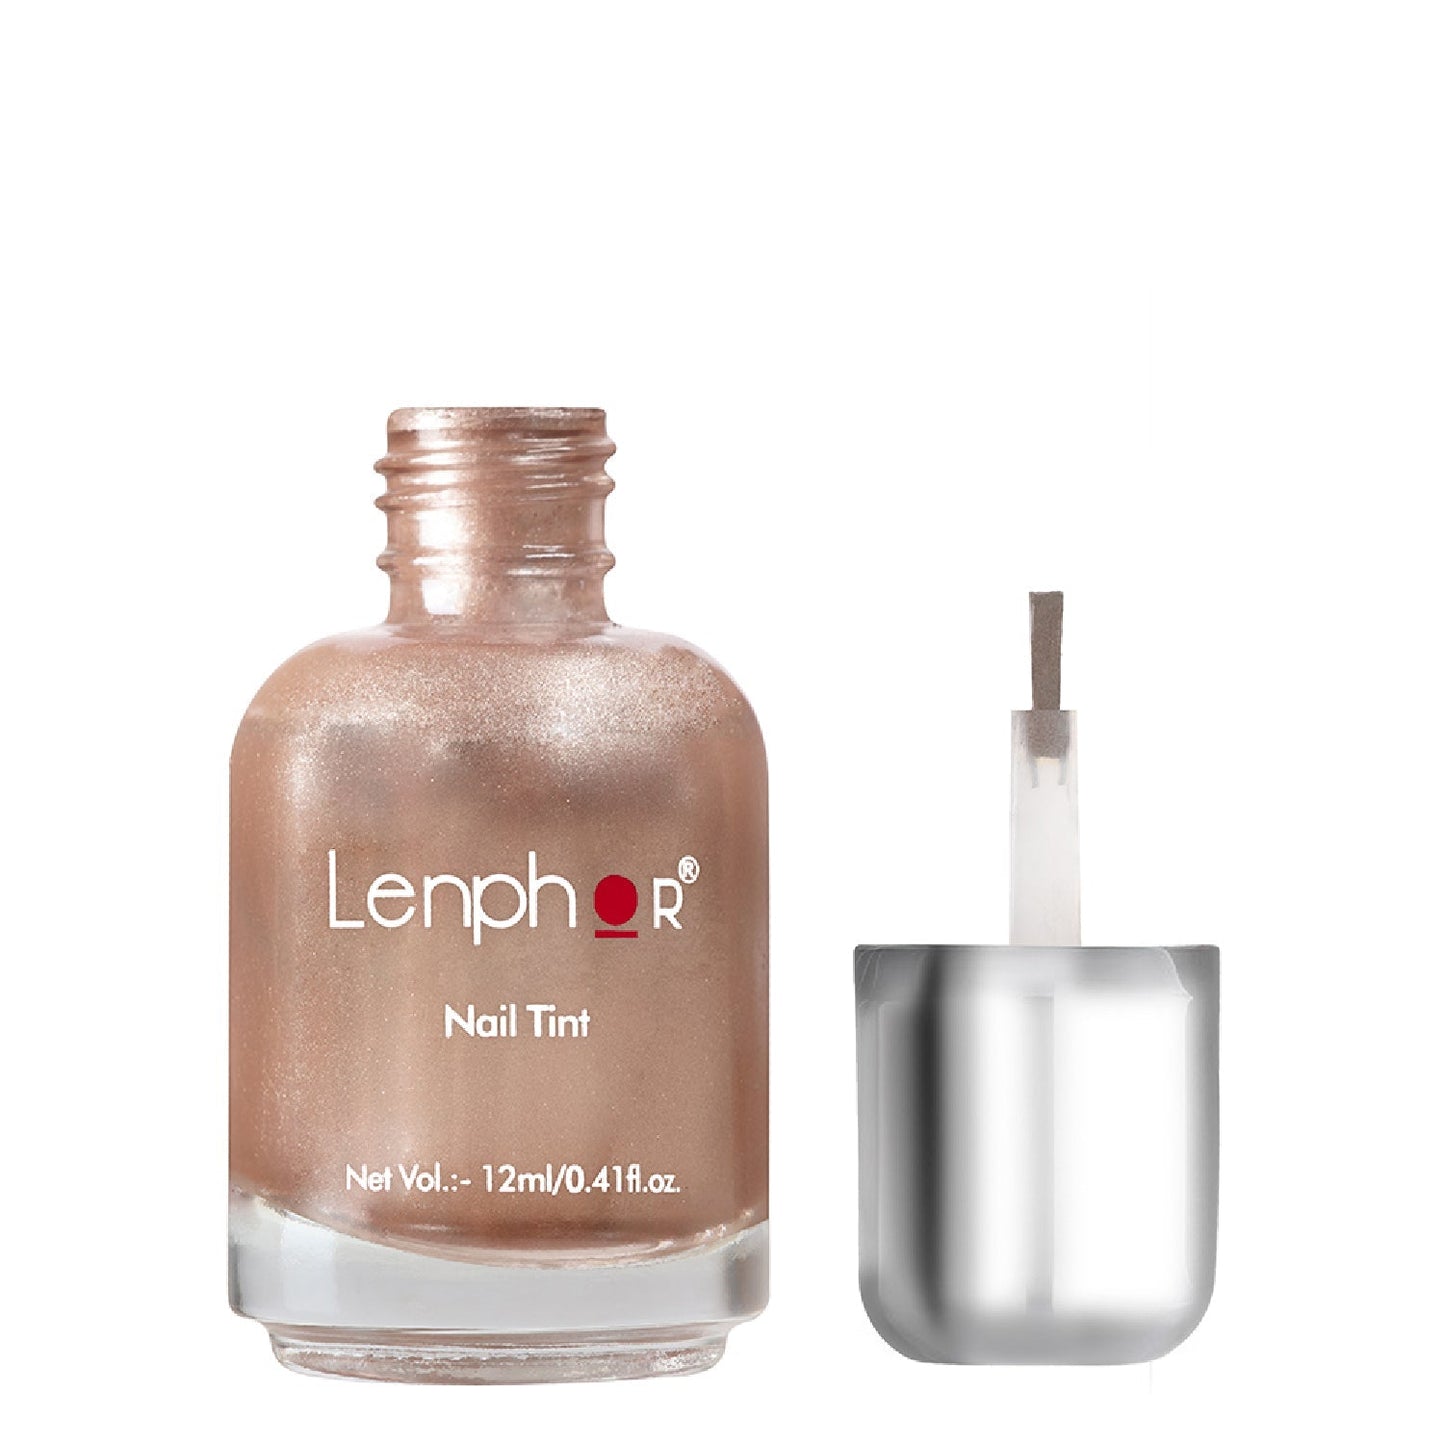 Lenphor Chrome Finish Nail Tints